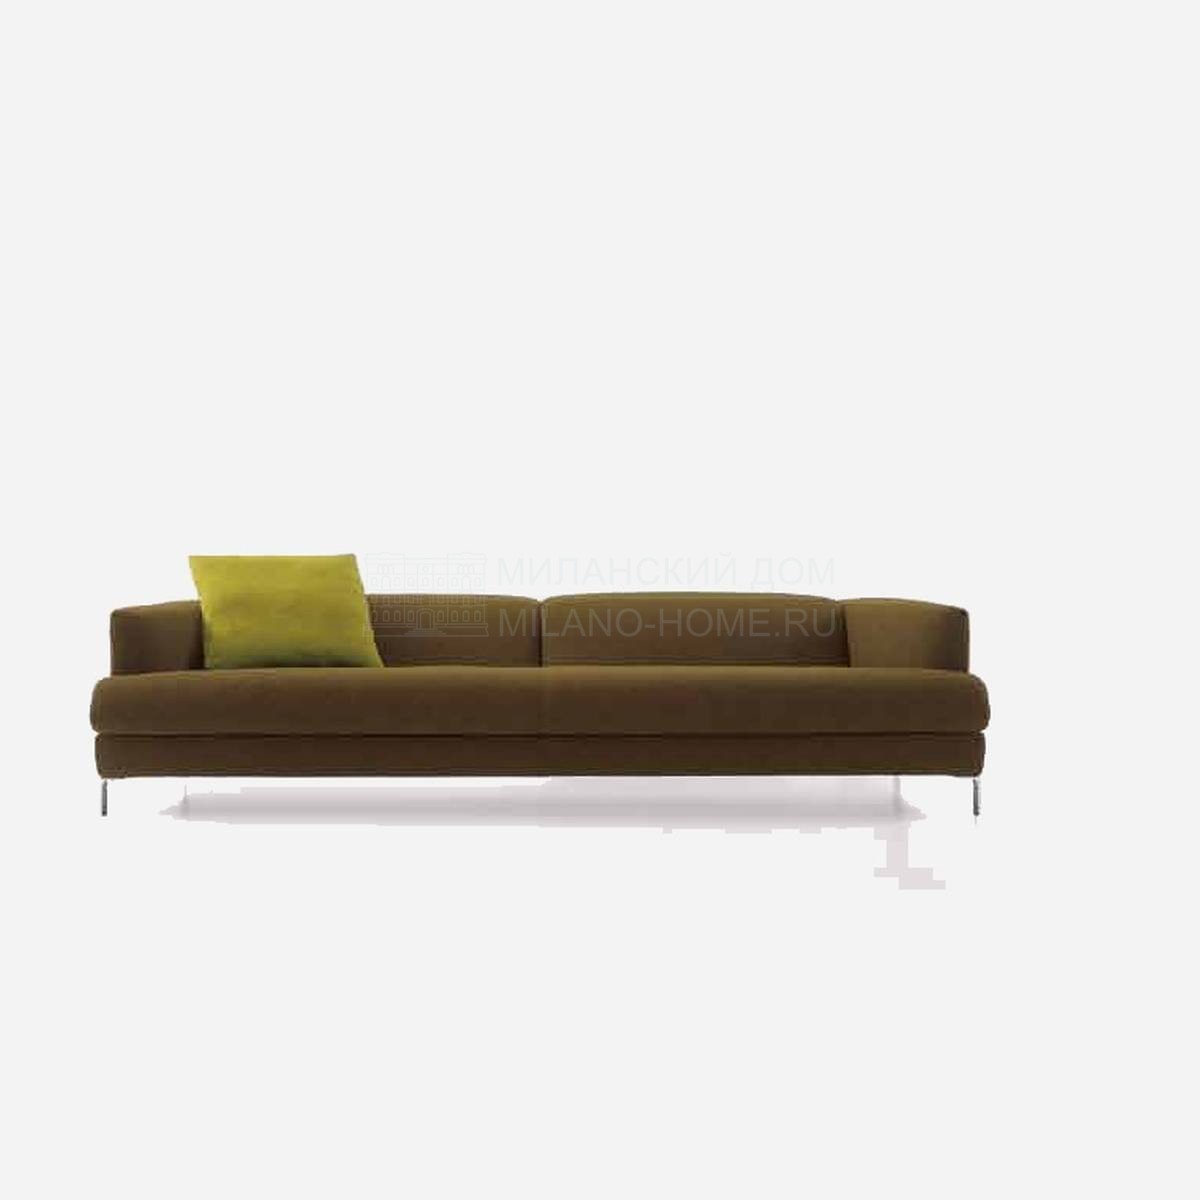 Прямой диван Symbol/ sofa из Италии фабрики NUBE